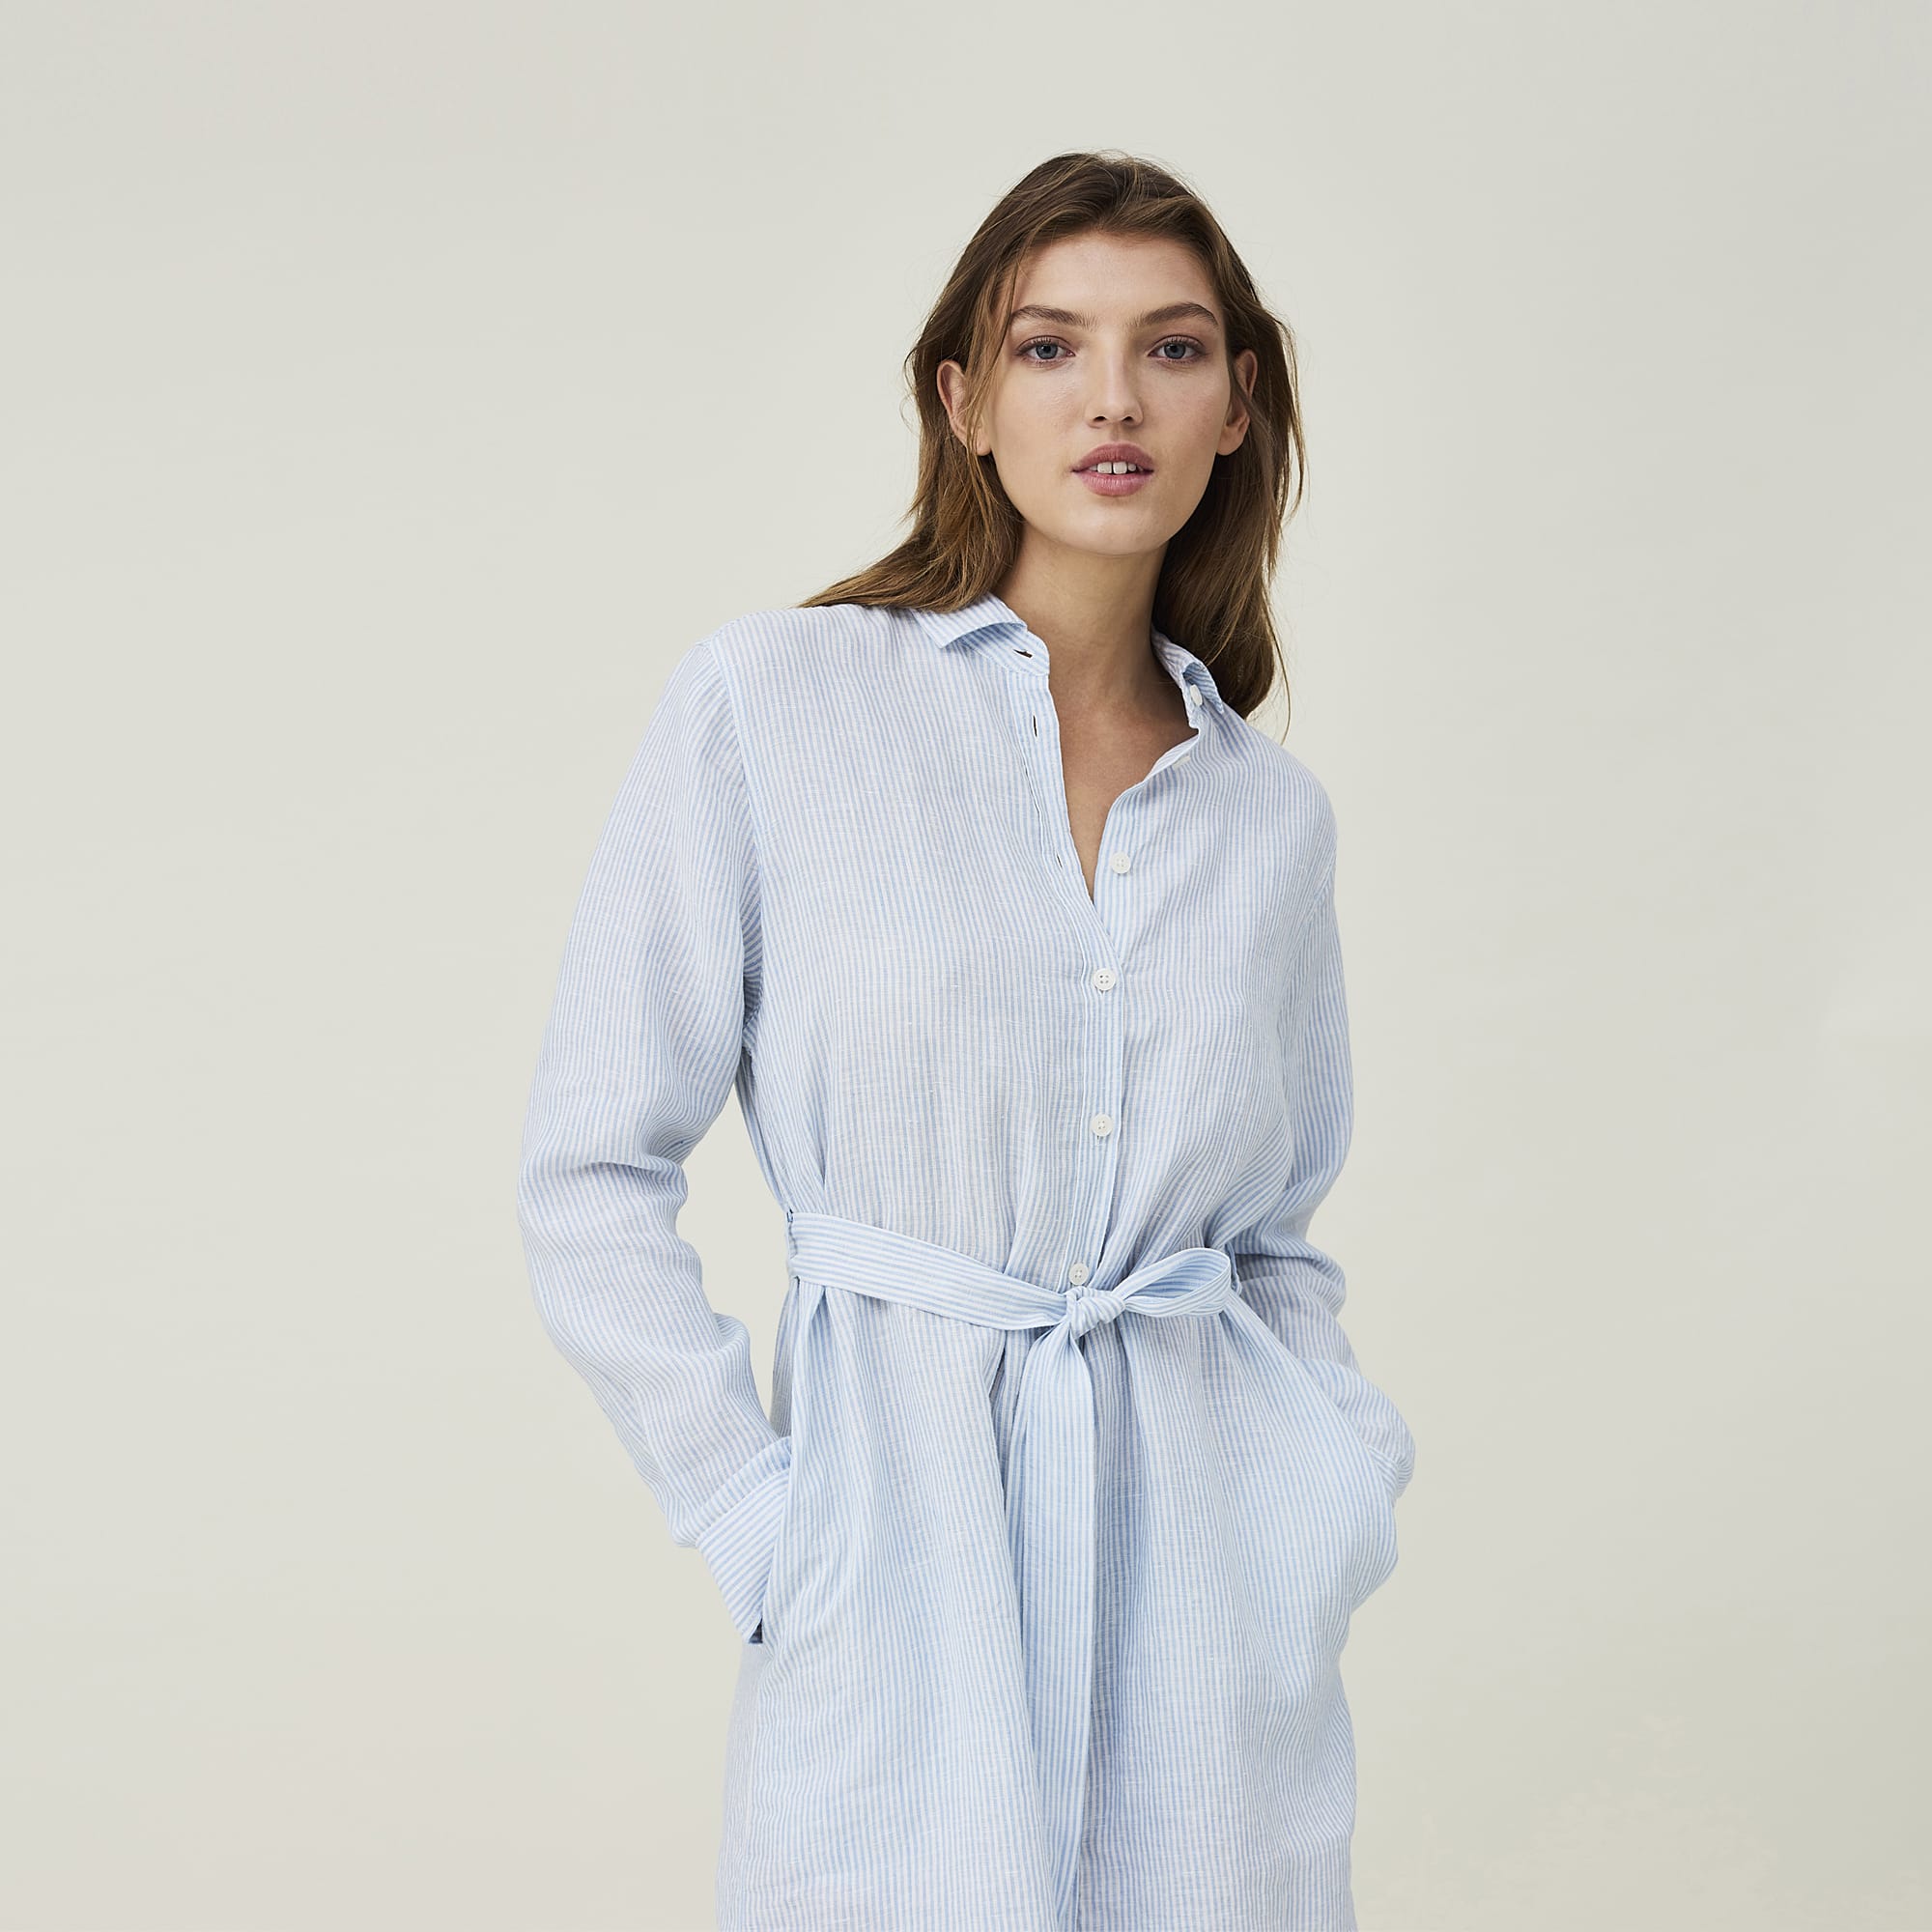 Isa Linen Shirt Dress, lt blue/white stripe